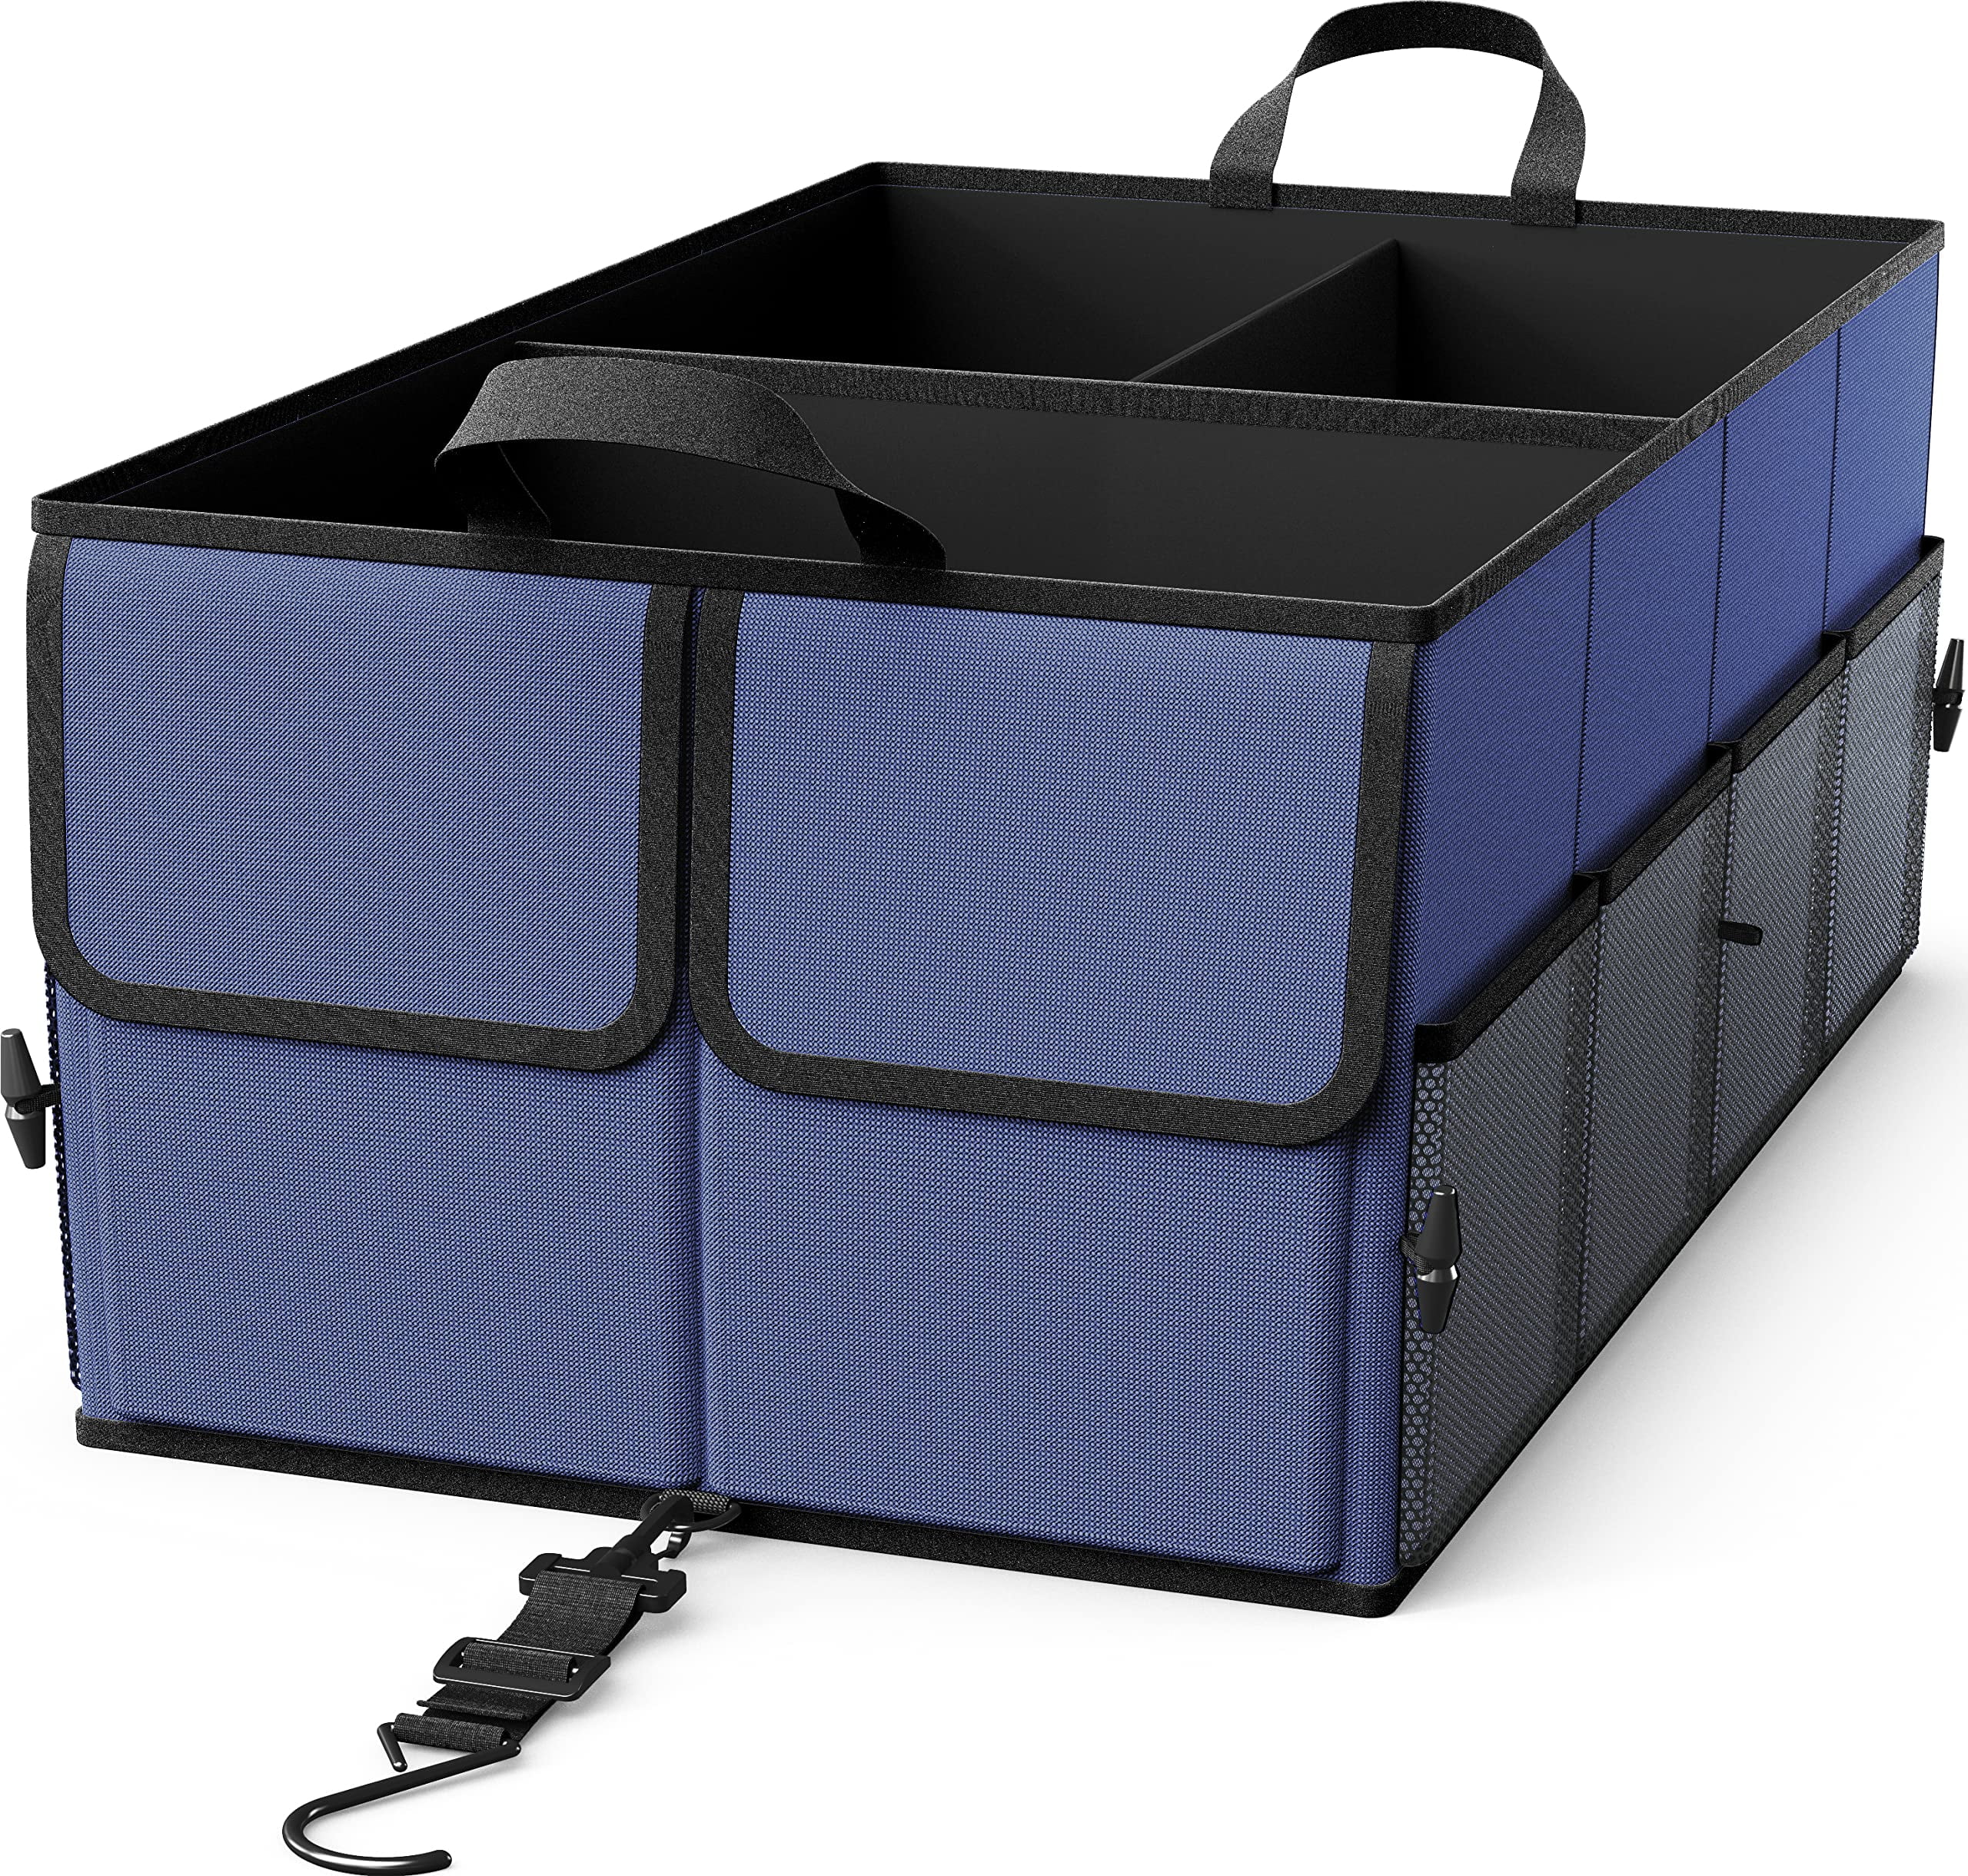 EPAuto 3-Compartment Cargo Trunk Storage Organizer, Dark Grey